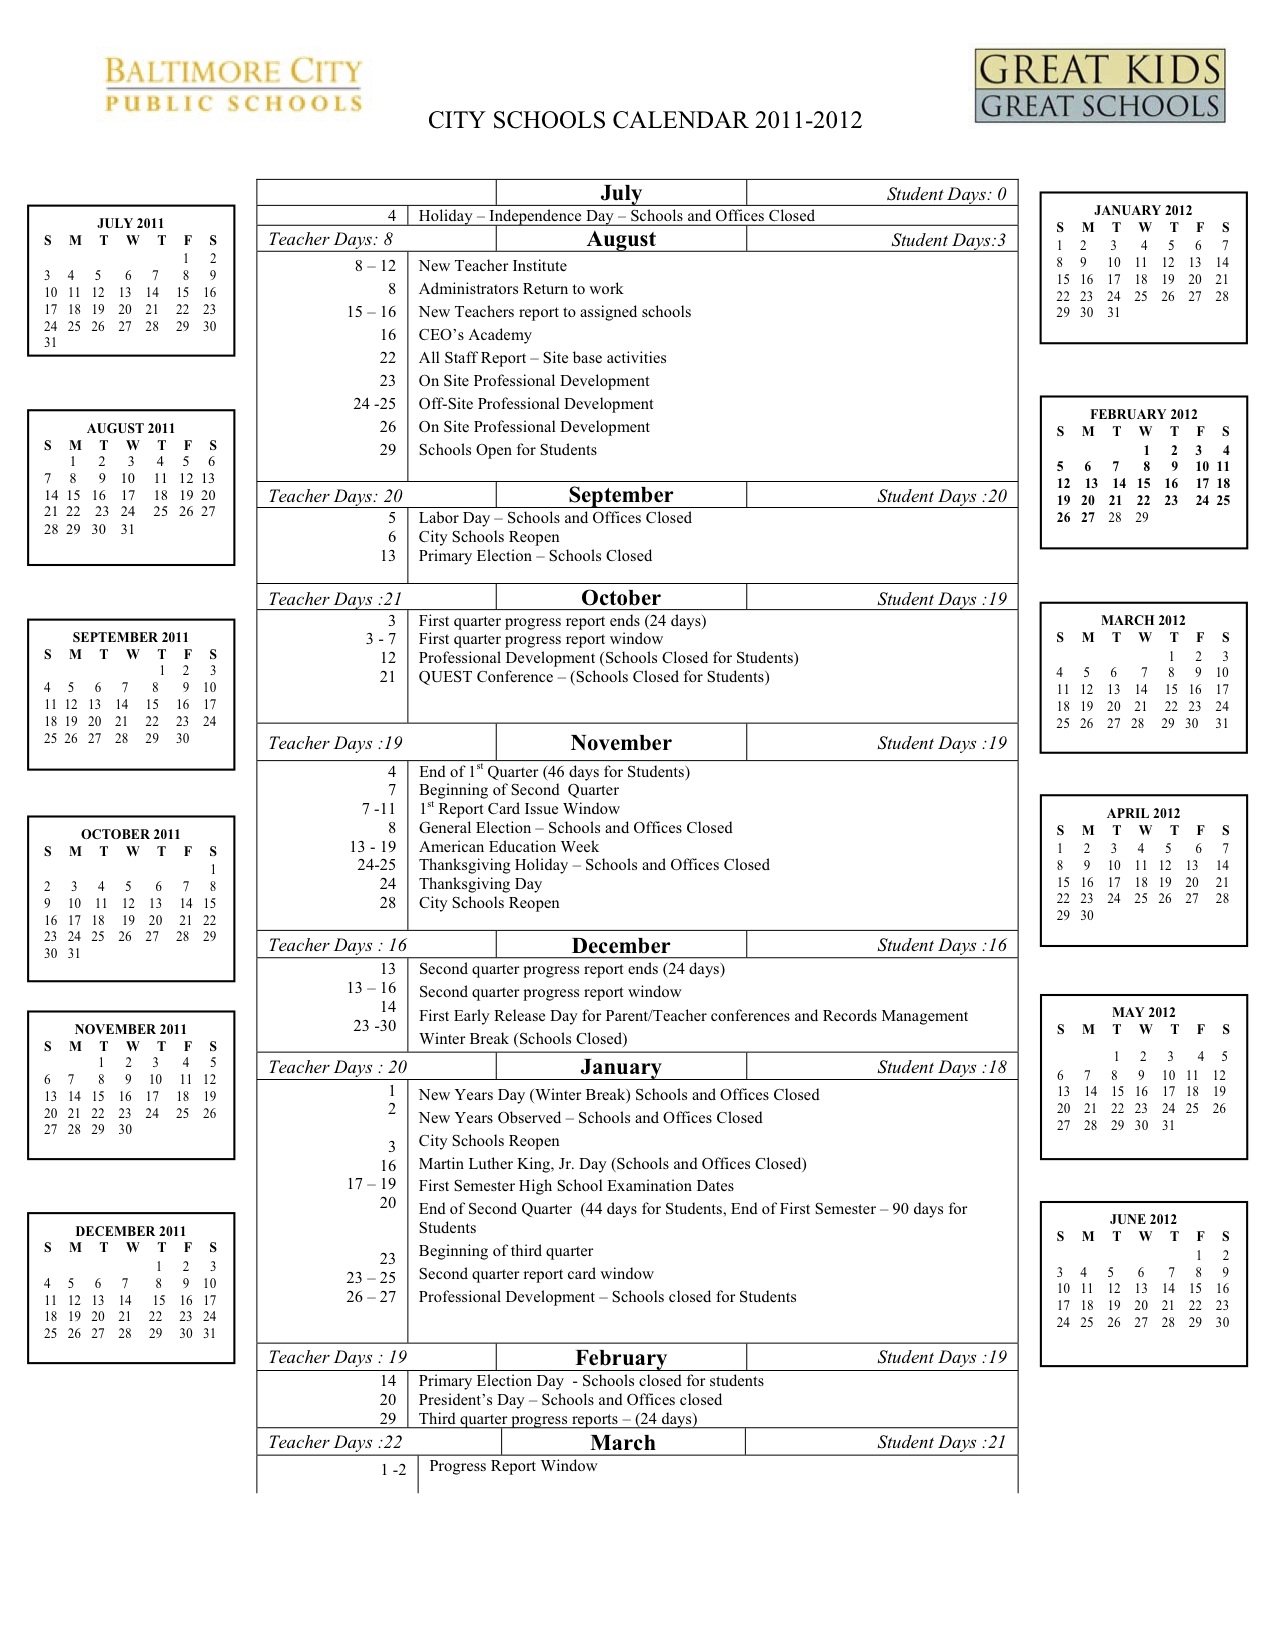 Baltimore County School Calendar